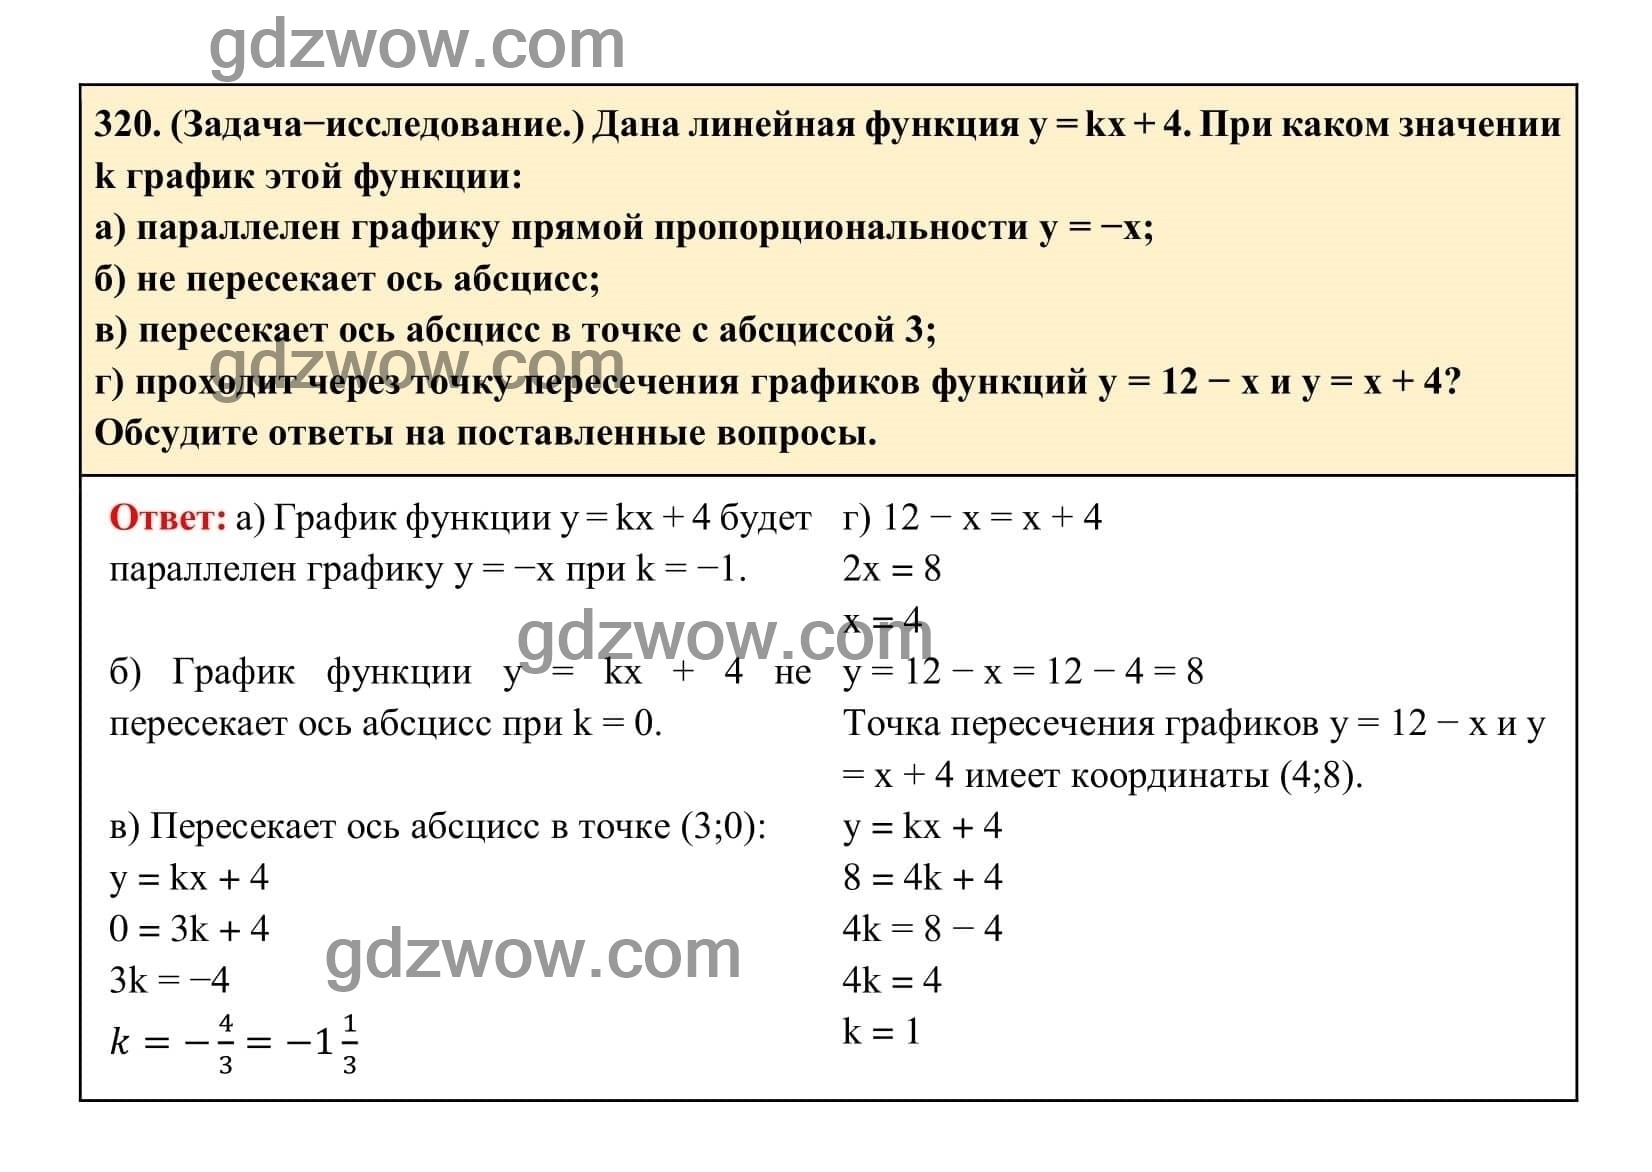 Упражнение 320 - ГДЗ по Алгебре 7 класс Учебник Макарычев (решебник) - GDZwow